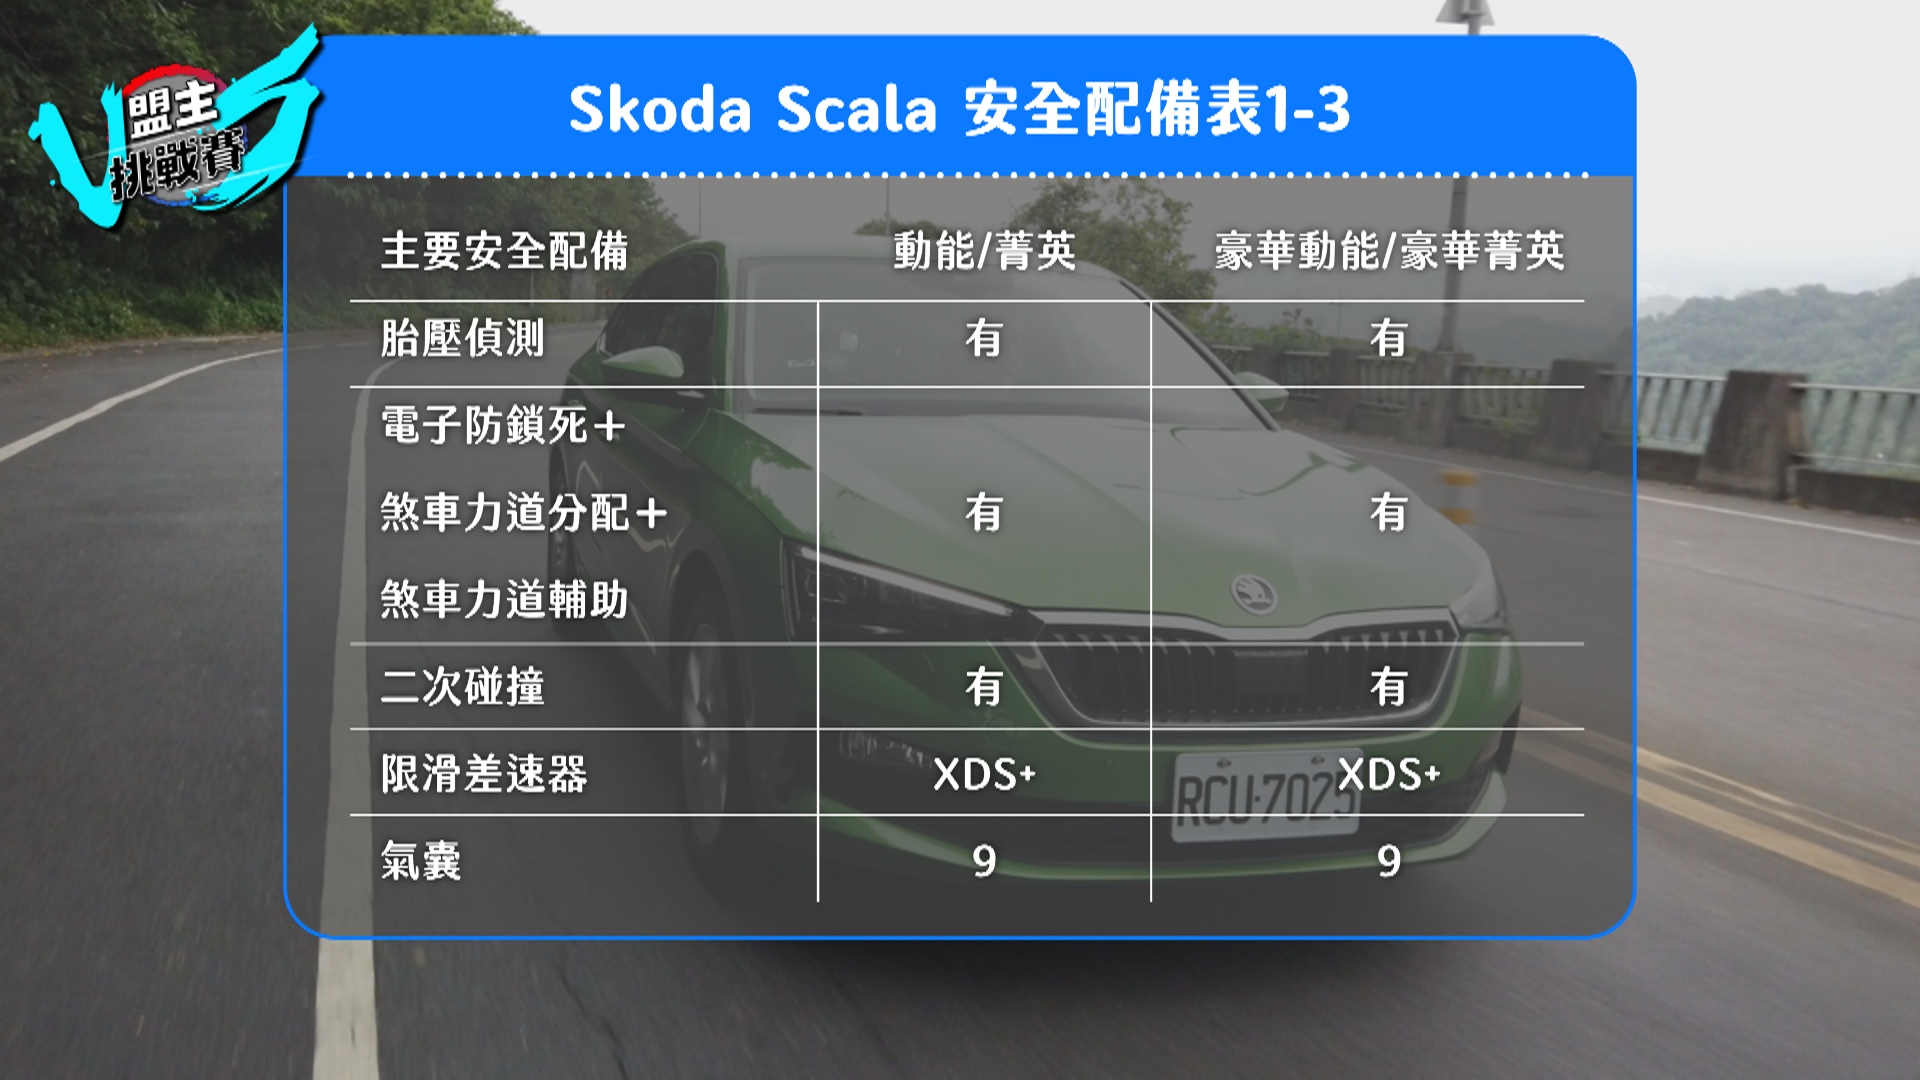 二次碰撞預煞系統、前軸限滑差速器、九具氣囊等，都是 Scala 於安全配備上的特點。